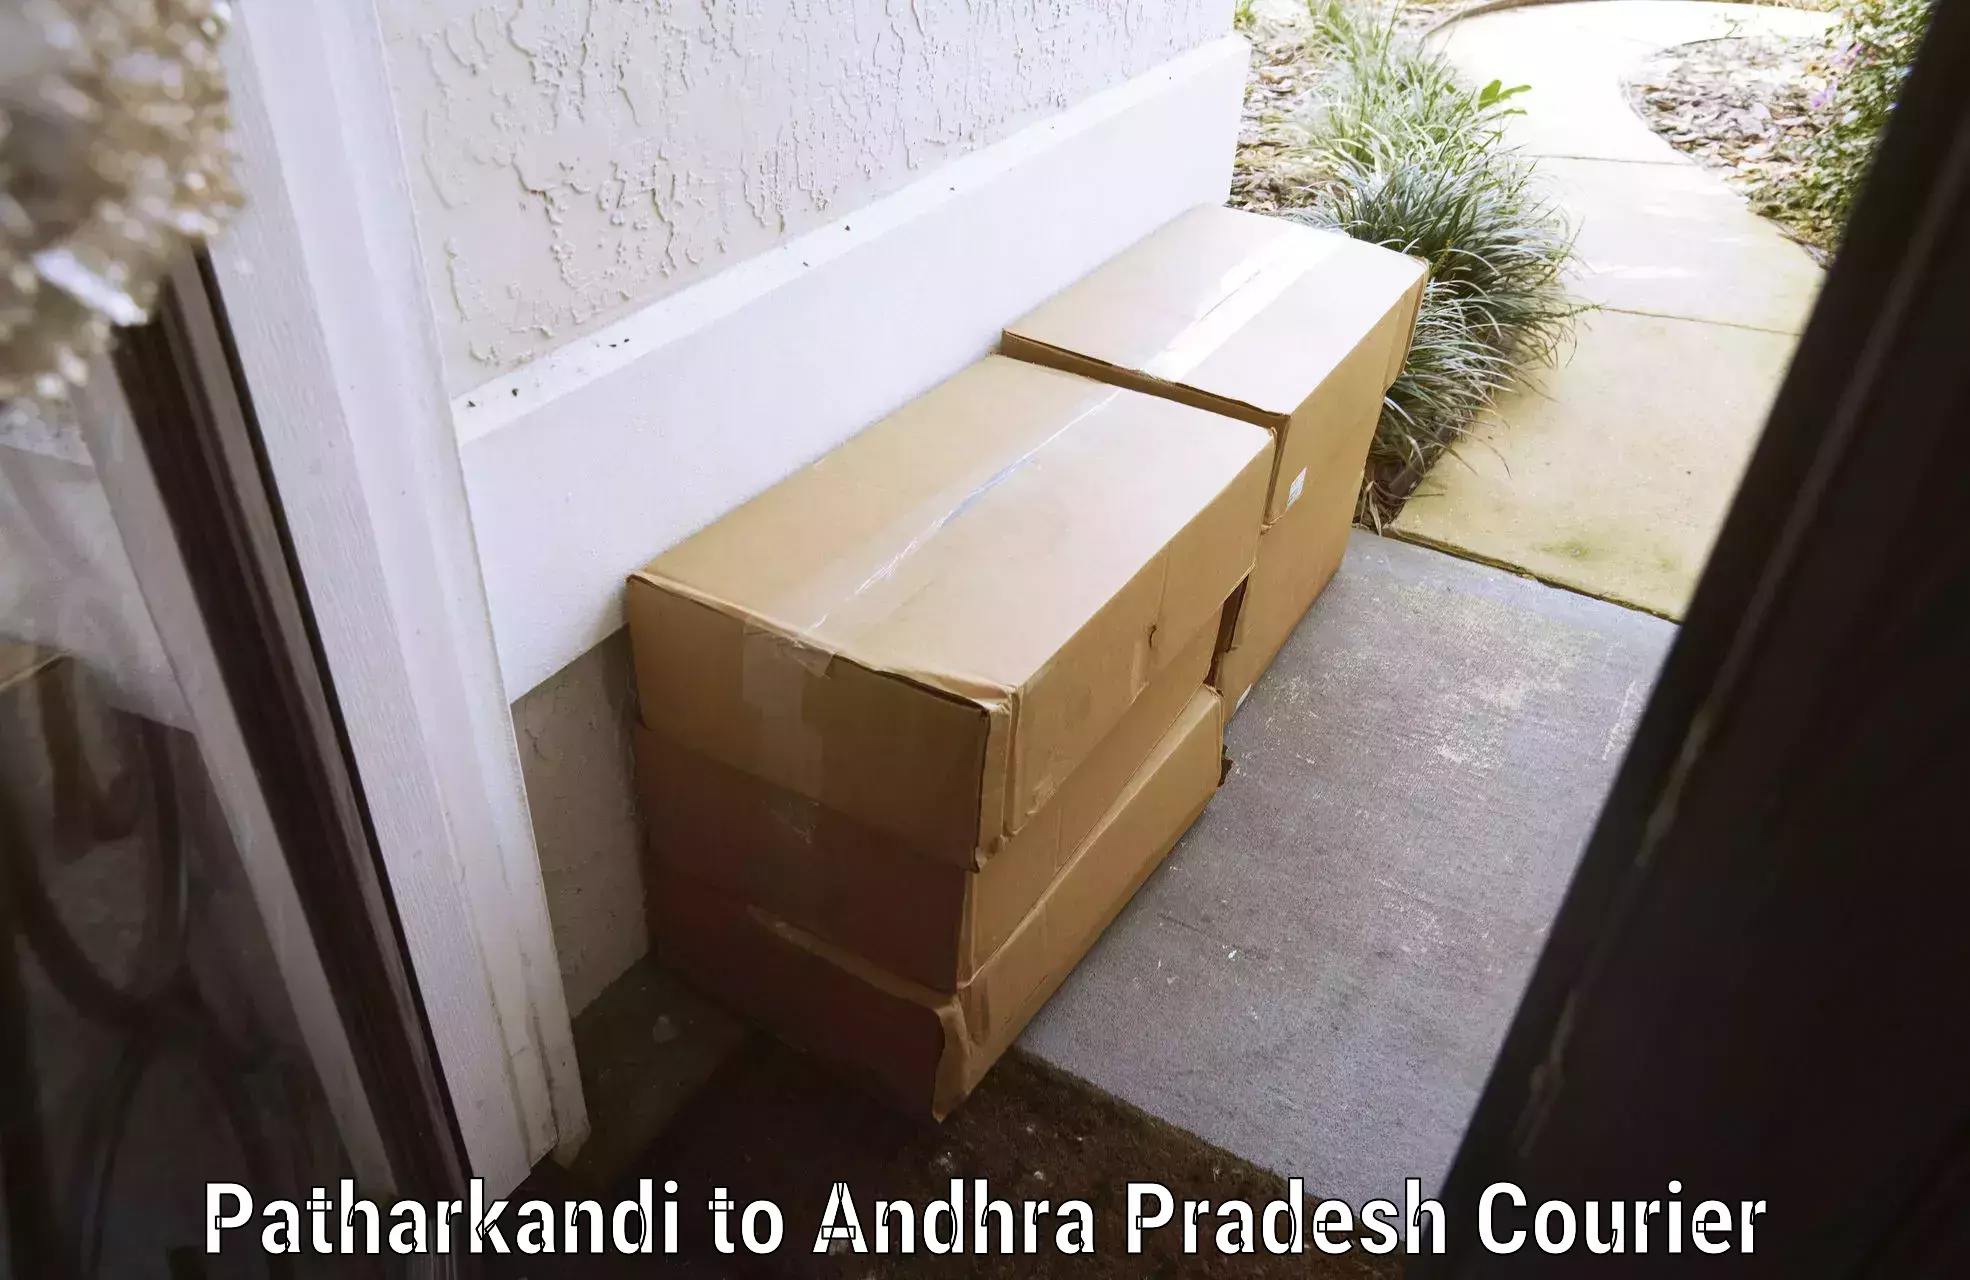 Baggage shipping experts Patharkandi to Andhra Pradesh